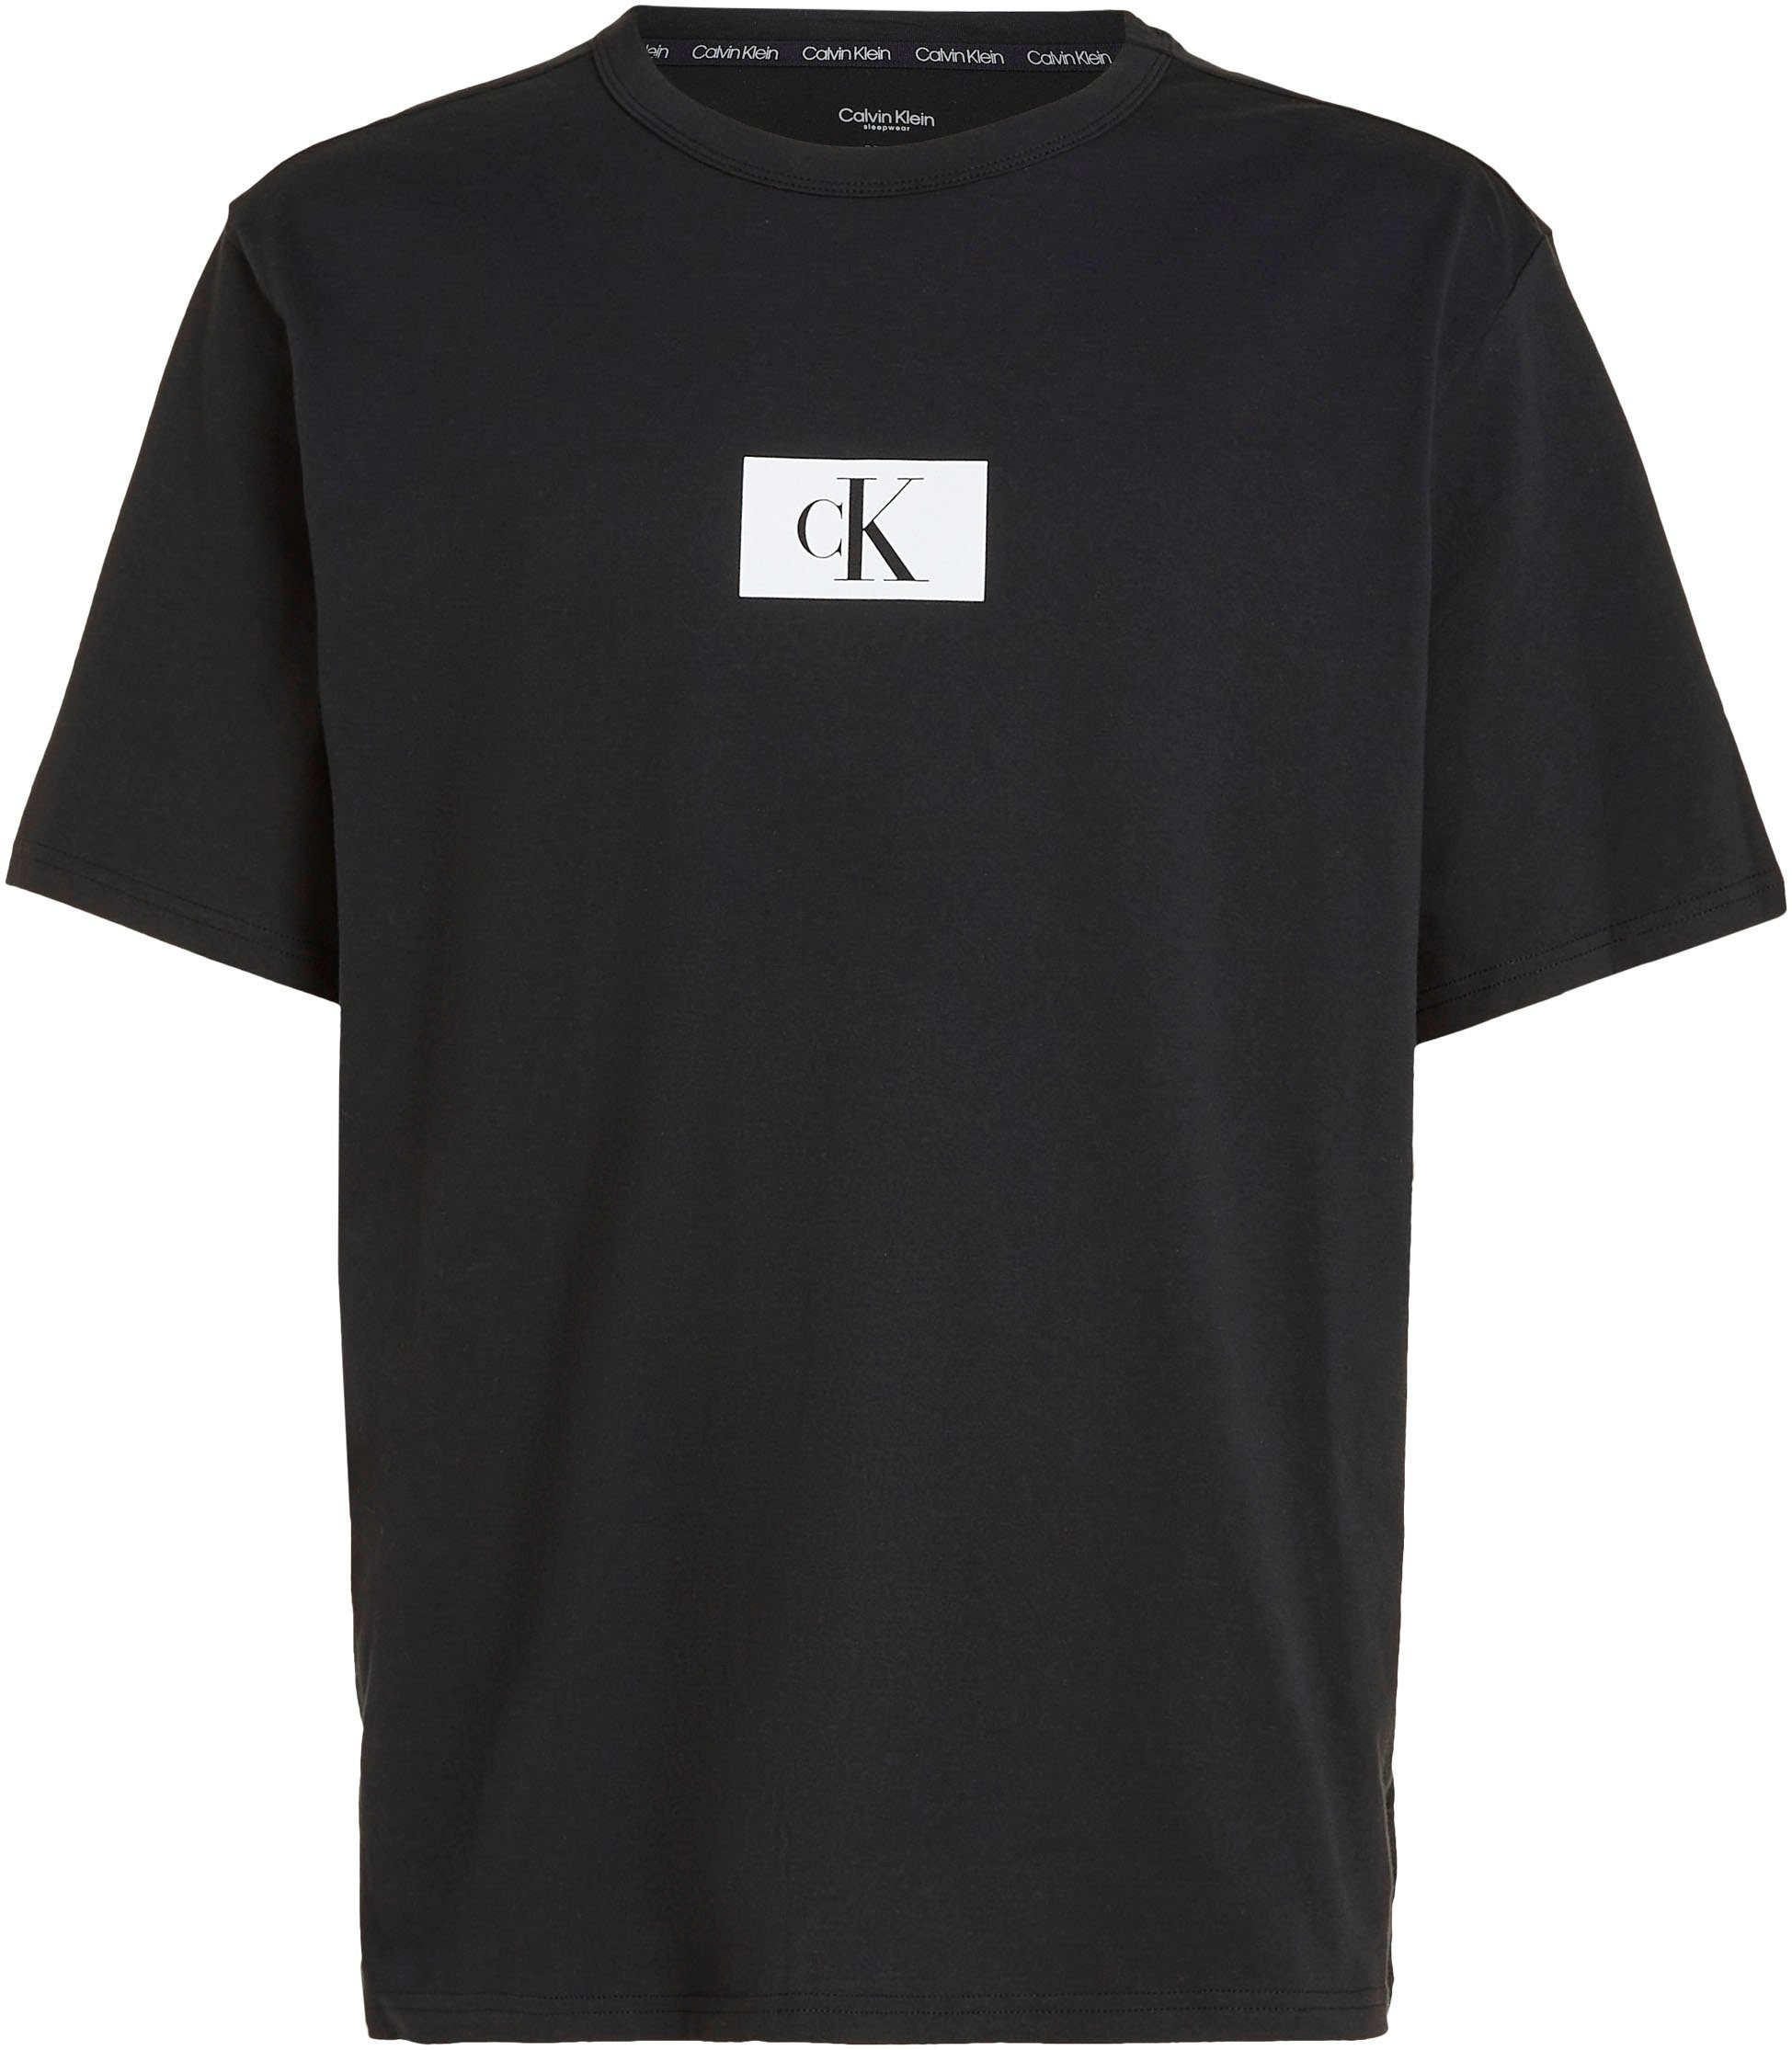 mit Klein Logodruck Underwear T-Shirt BLACK NECK Brust der auf S/S Calvin CREW